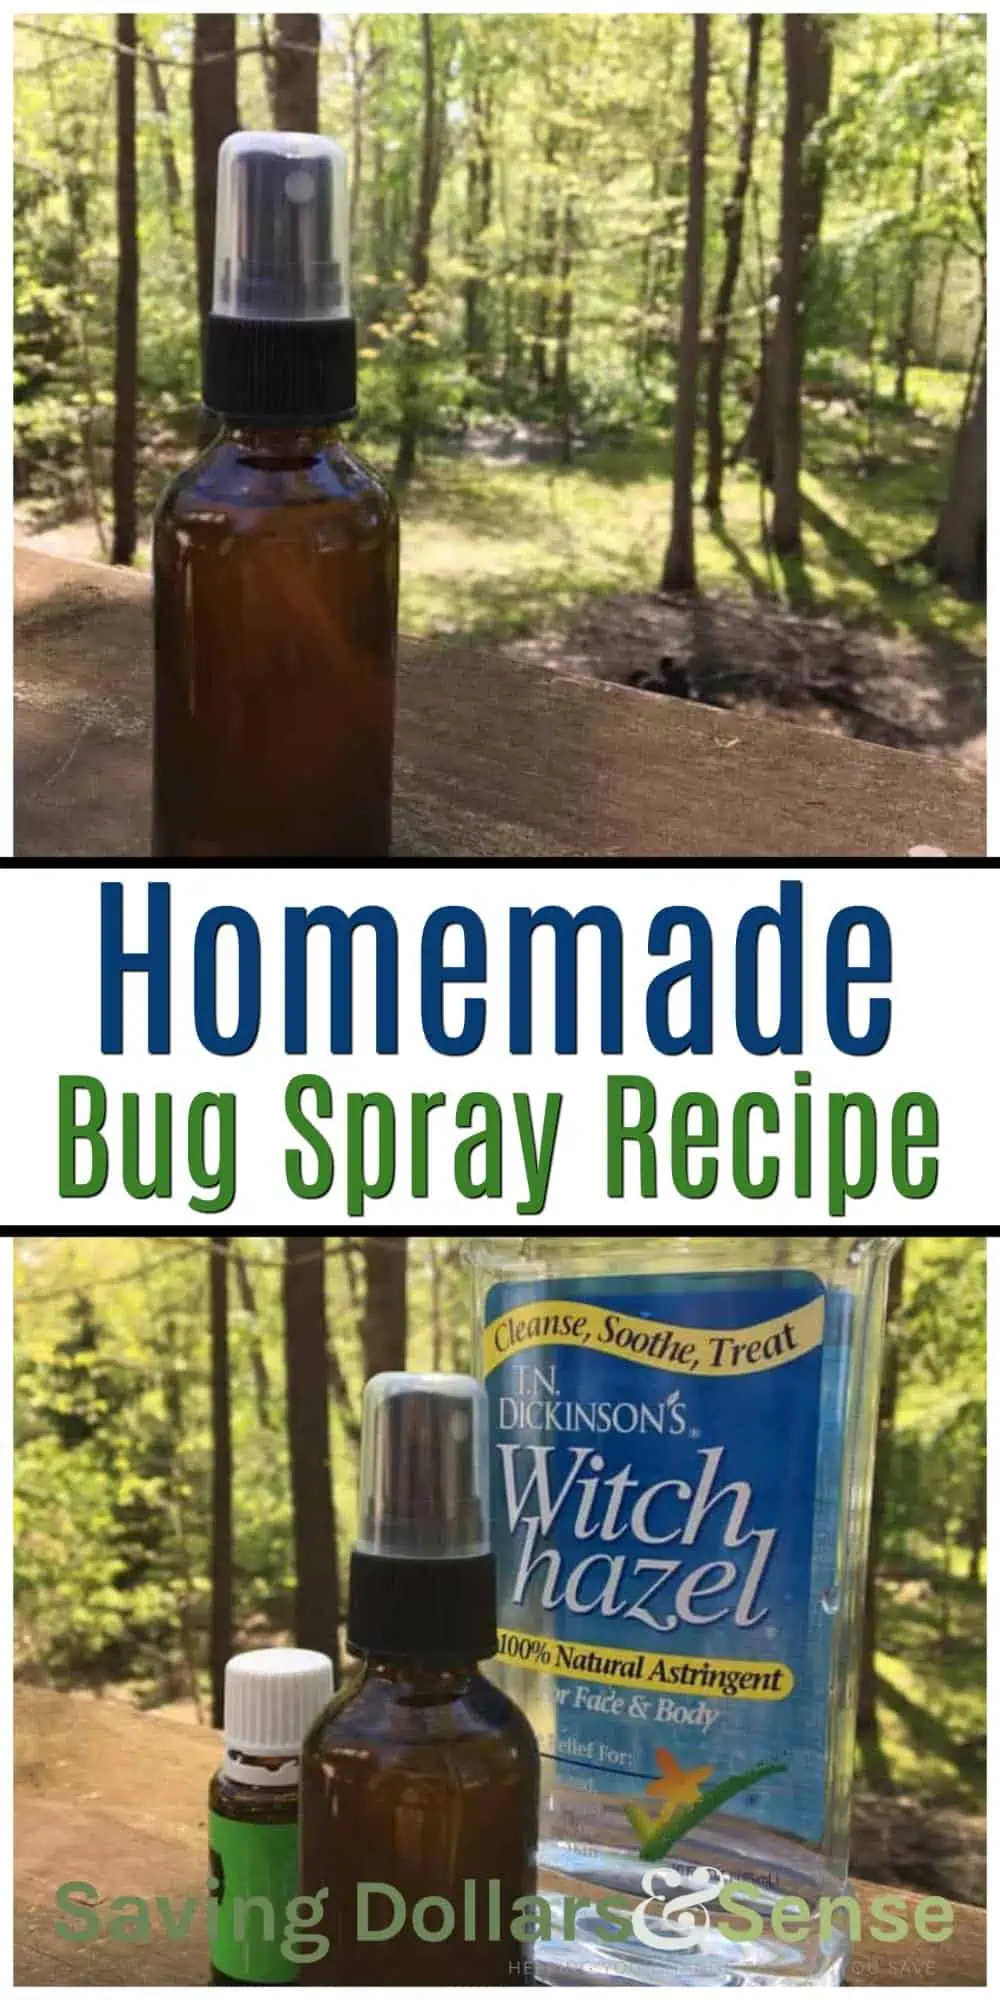 Homemade bug spray recipe.